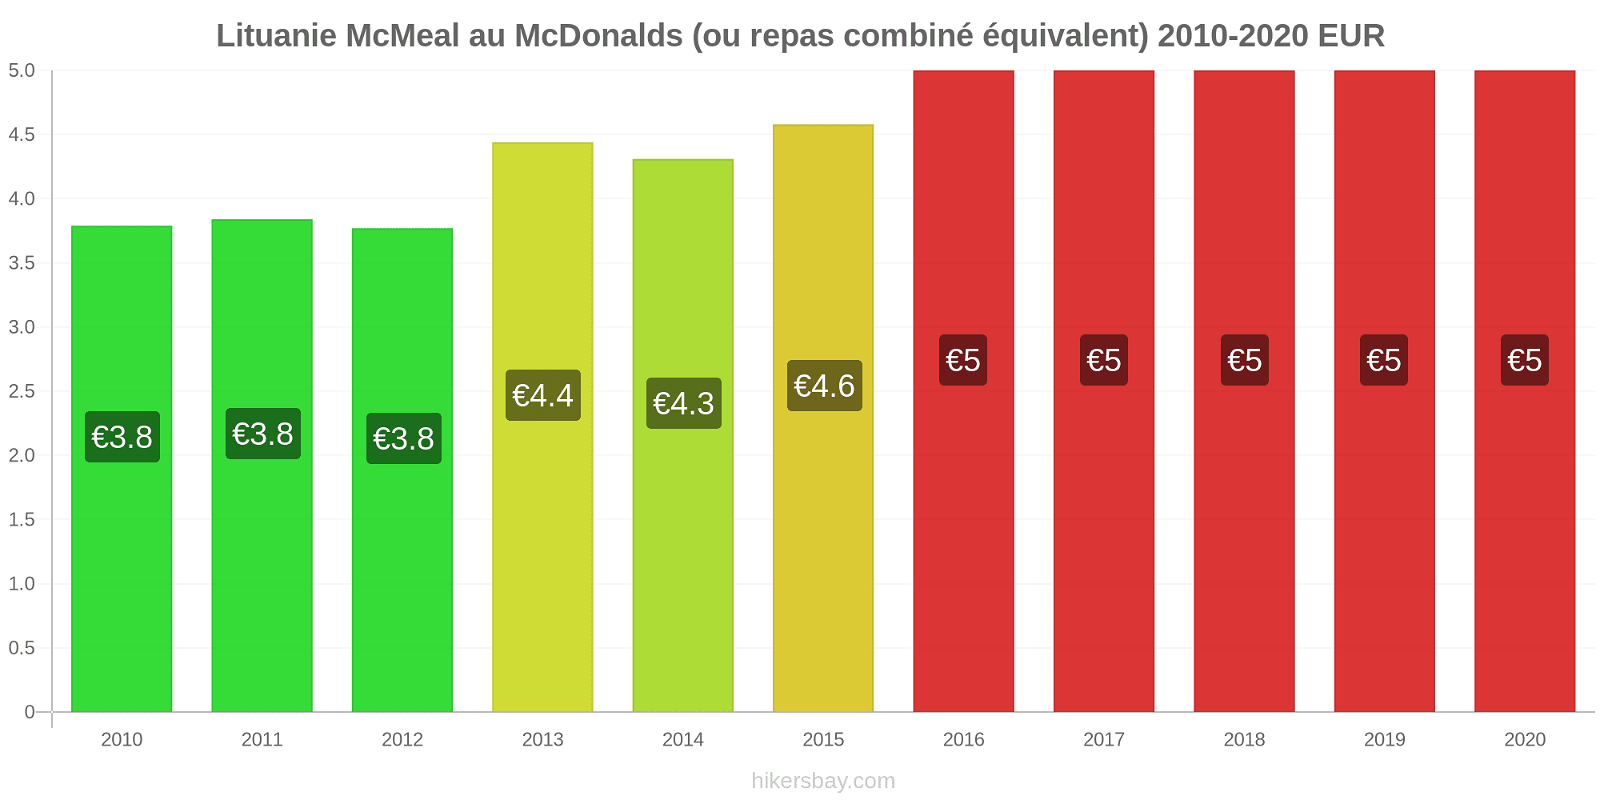 Lituanie changements de prix McMeal à McDonald ' s (ou Combo équivalent tourteau) hikersbay.com